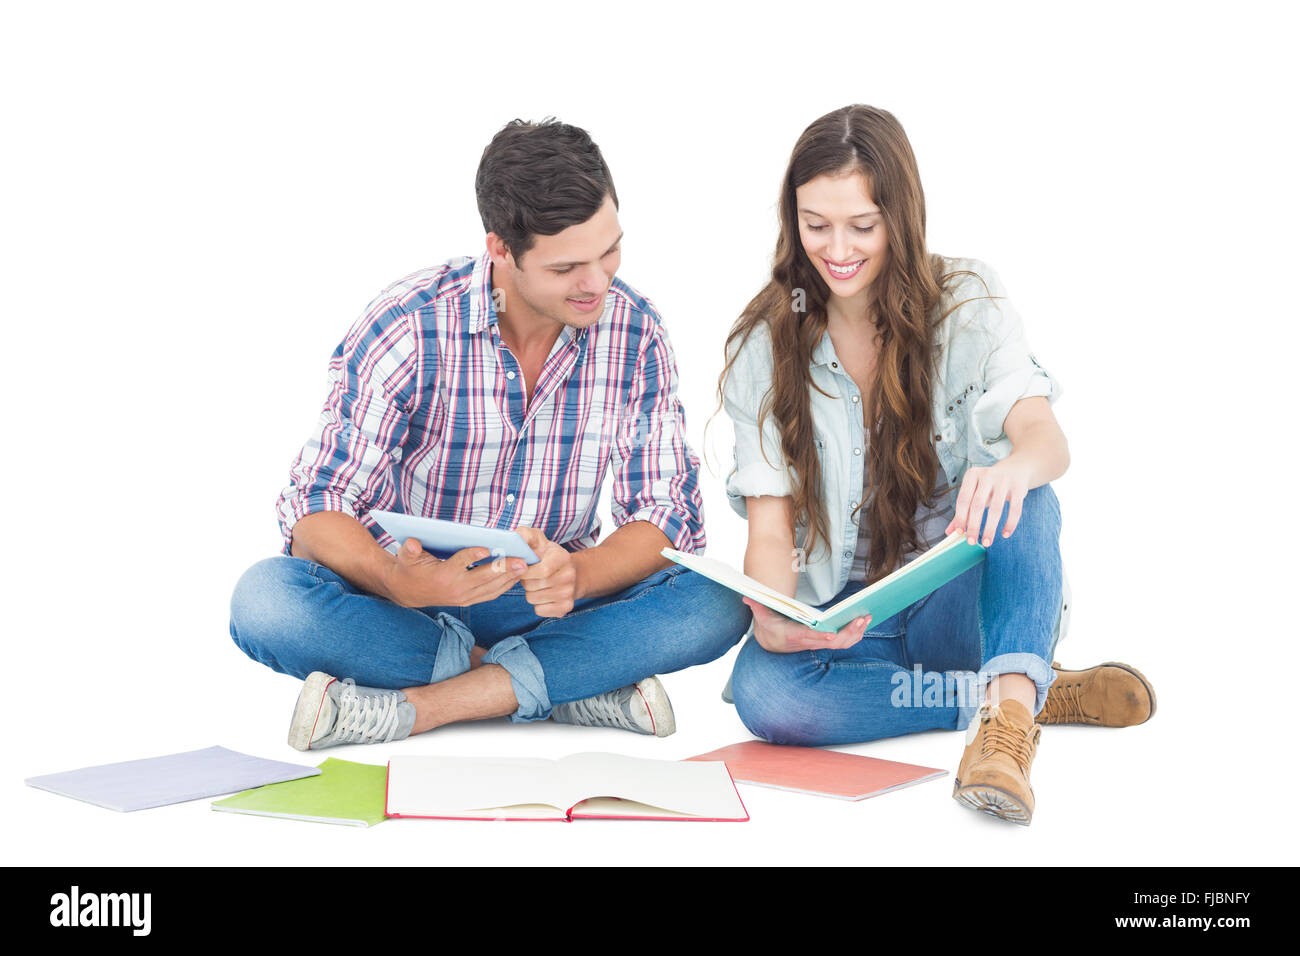 Glücklich zu zweit mit Büchern studieren und tablet auf dem Boden sitzend Stockfoto